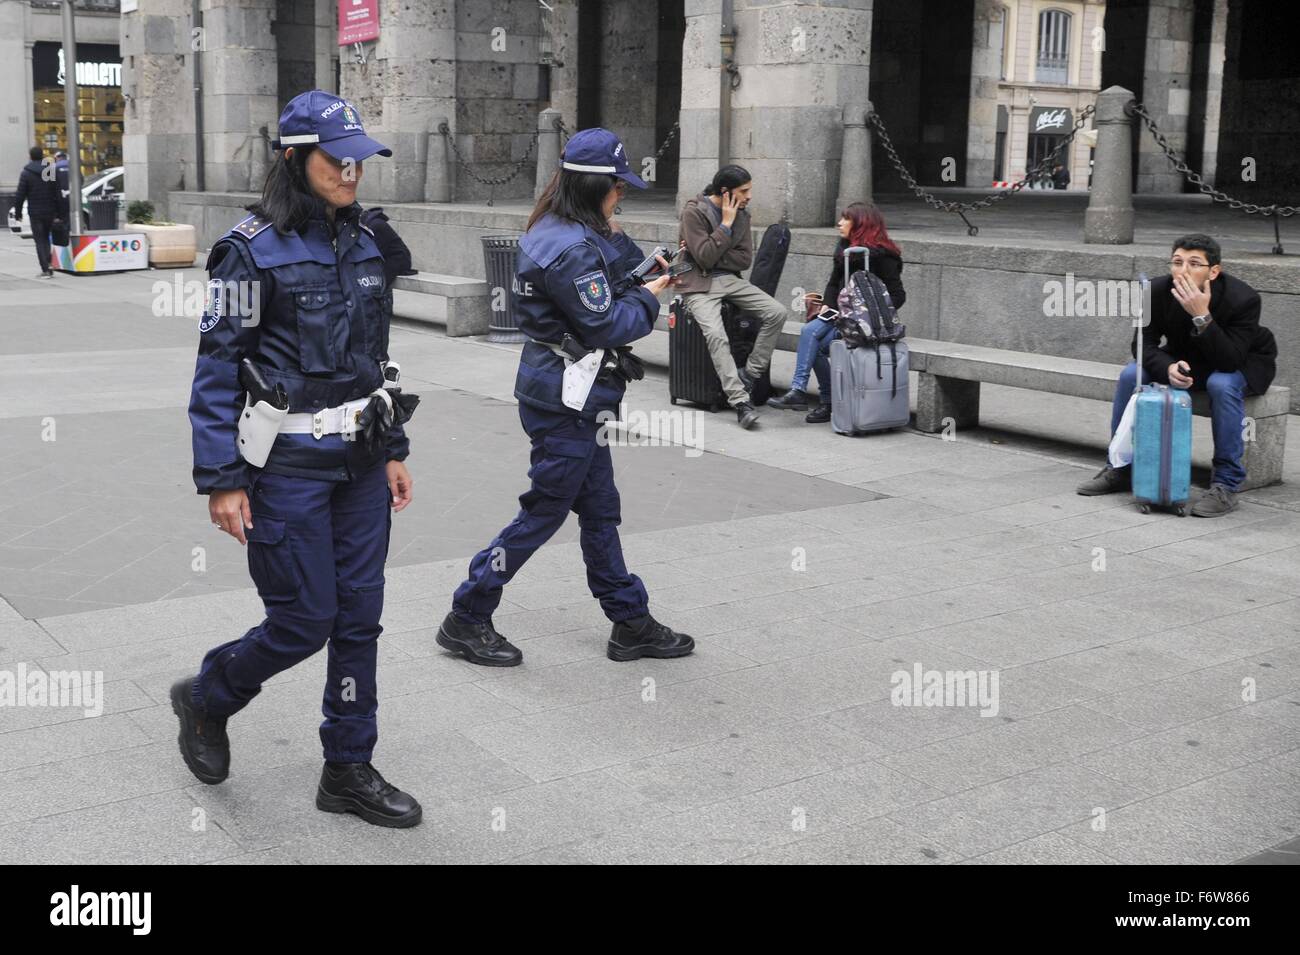 Mailand, Italien. 19. November 2015.  Polizei im Anti-Terror-Sicherheitsdienst im Stadt Zentrum Credit: Dino Fracchia/Alamy Live News Stockfoto